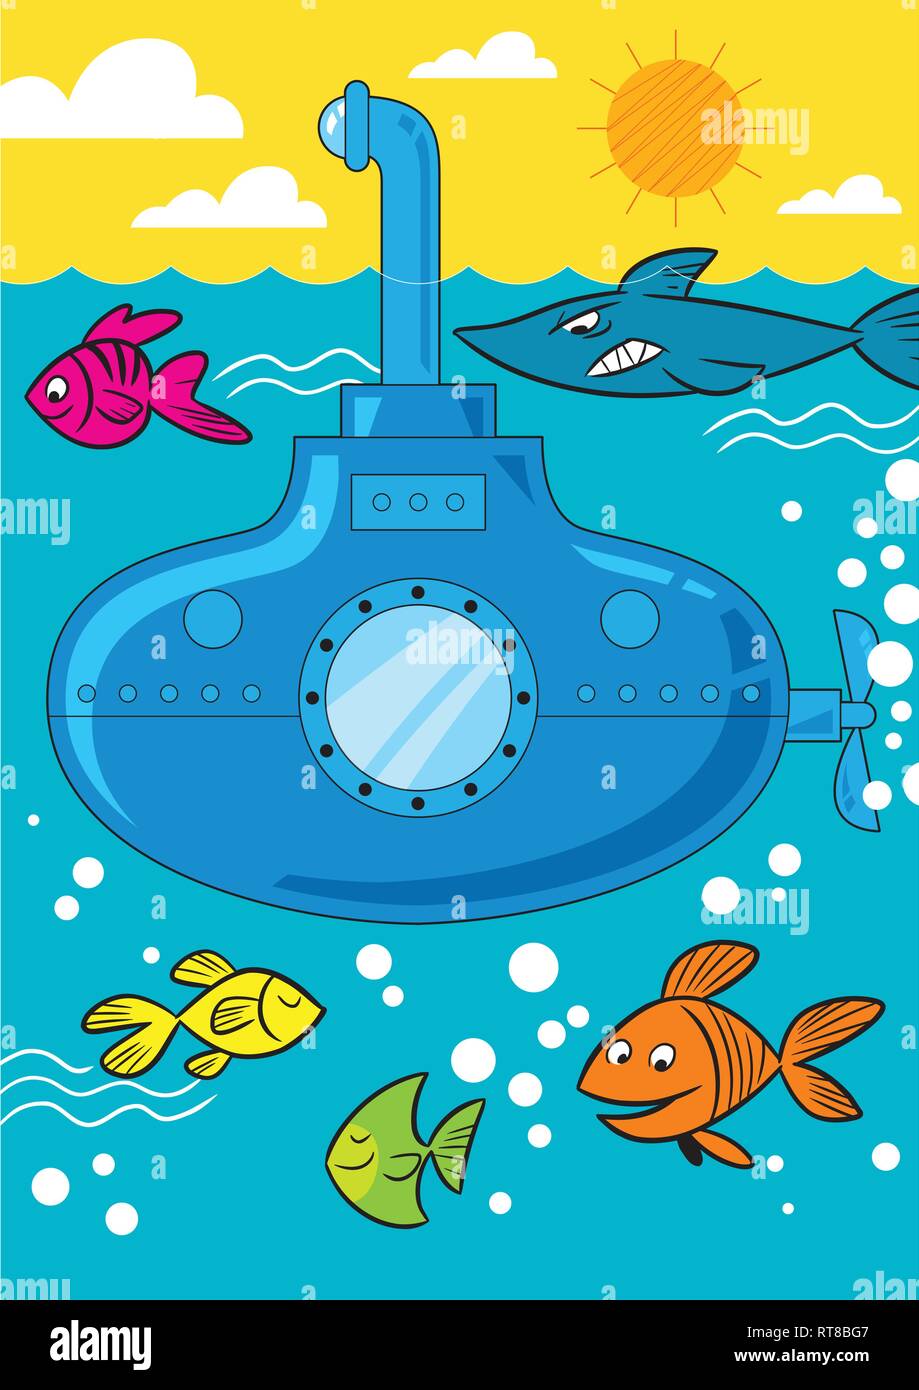 In Vector Illustration, ein Cartoon u-Boot geht in die Tiefen des Meeres und der Fisch schwimmt in der Nähe. Stock Vektor